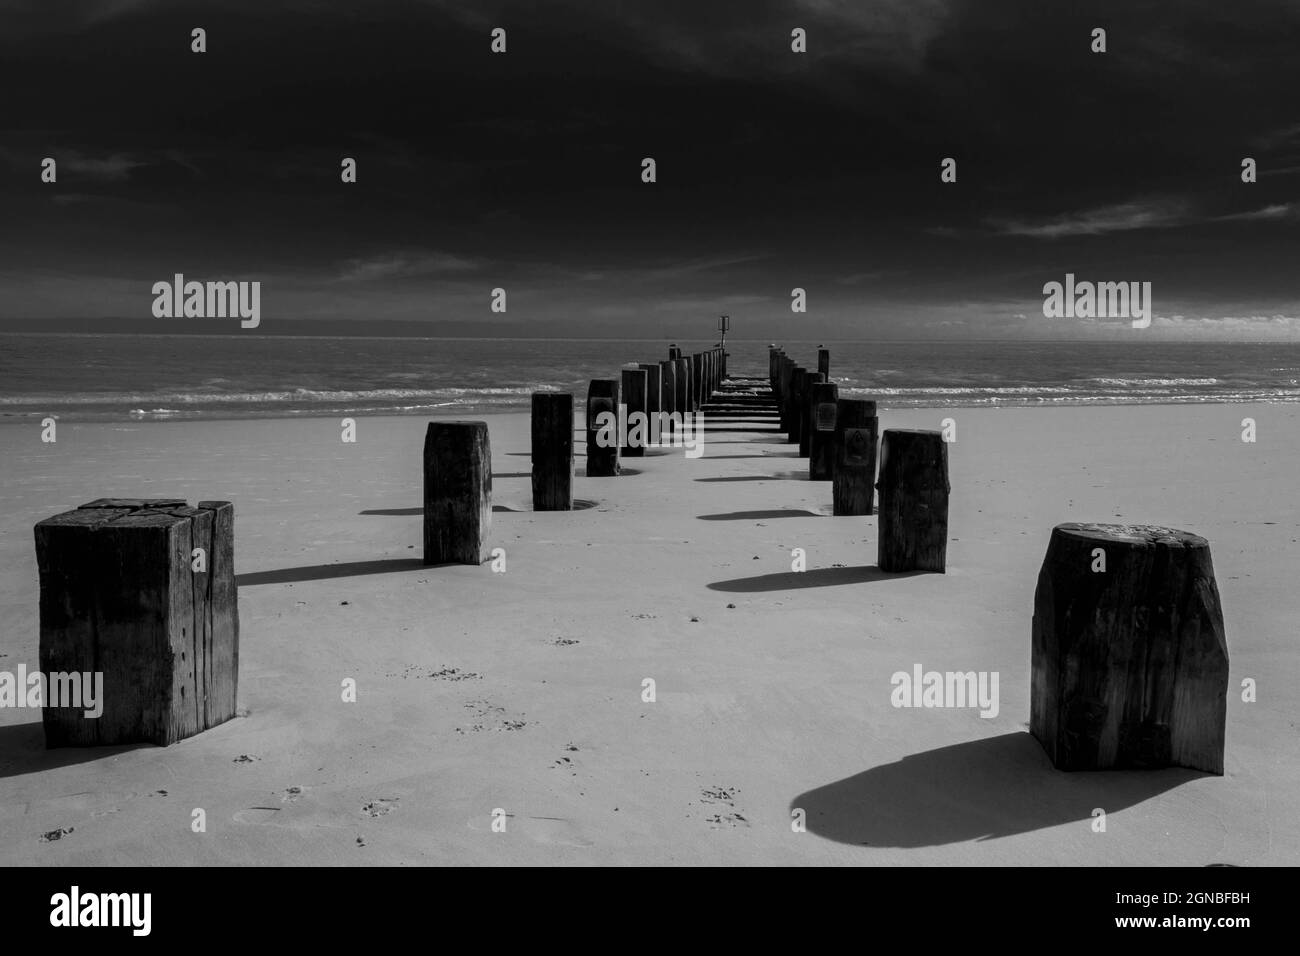 Immagine in bianco e nero di vecchi groynes, onde e sabbia sulla spiaggia di Lowestoft Suffolk UK. Nessuna gente Foto Stock